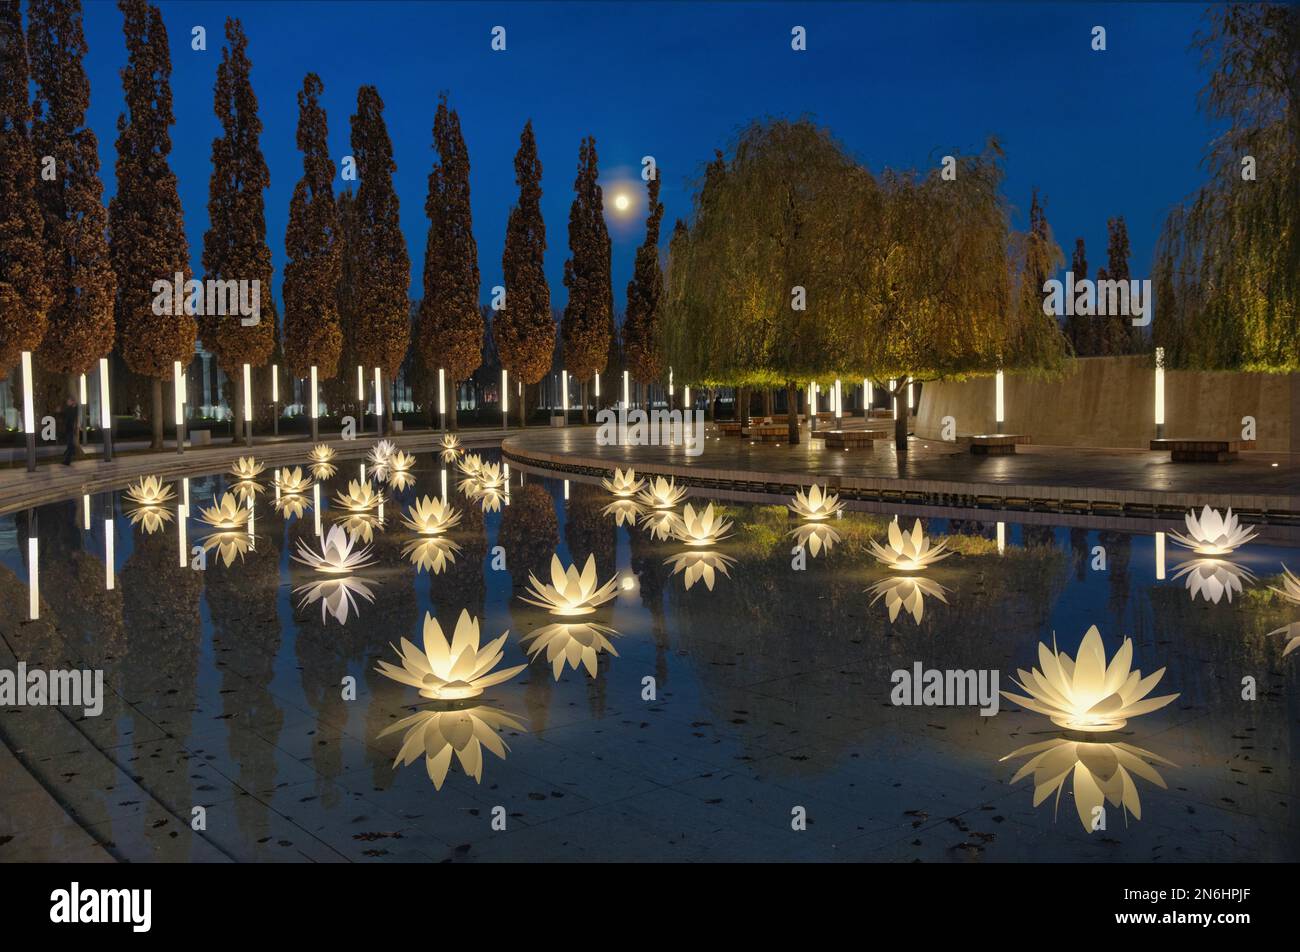 Lirios de agua iluminados, parque Galitskogo, Krasnodar, Rusia Foto de stock